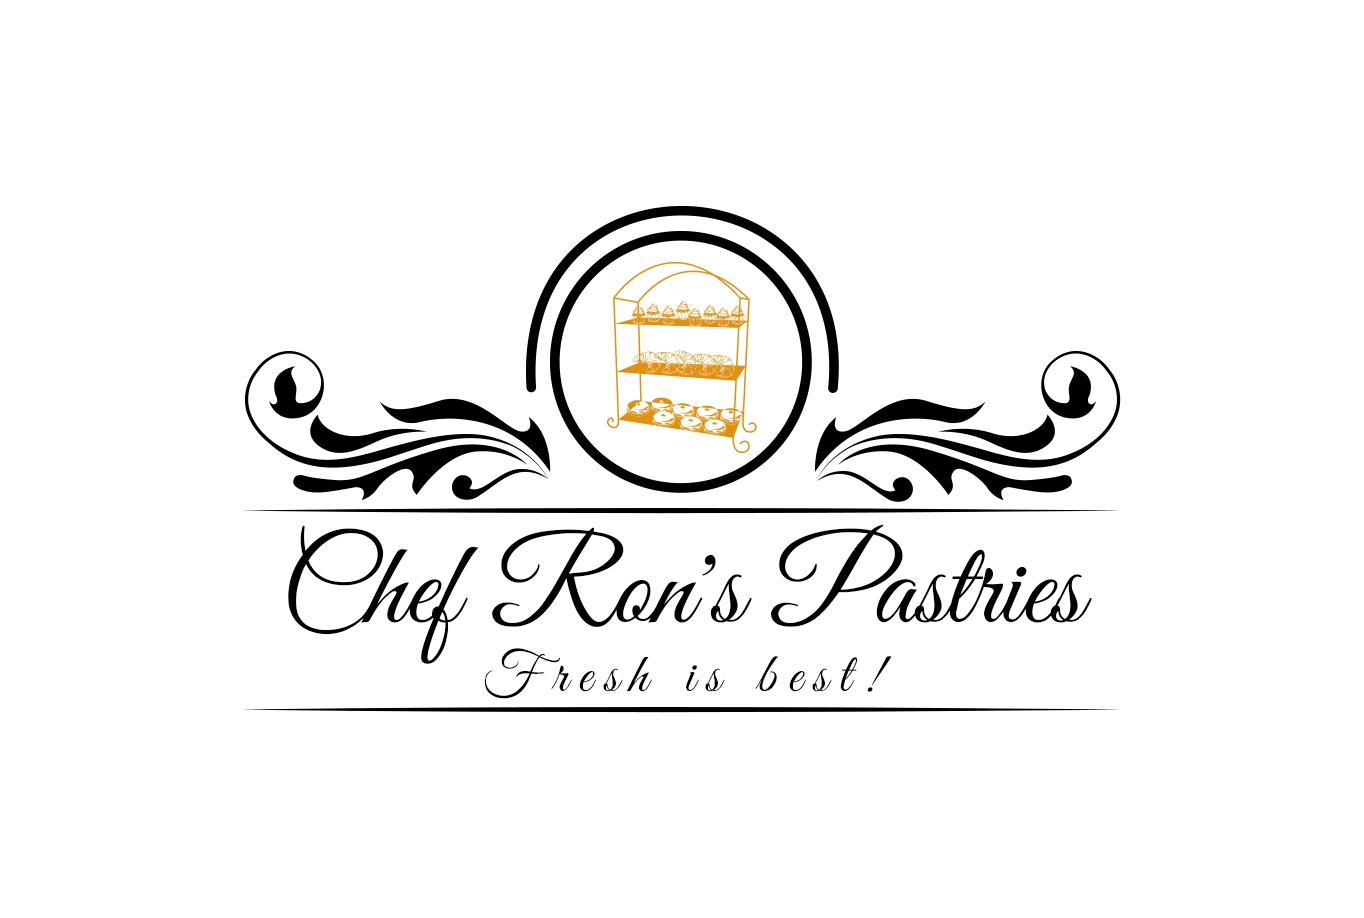   Chef Ron's Pastries